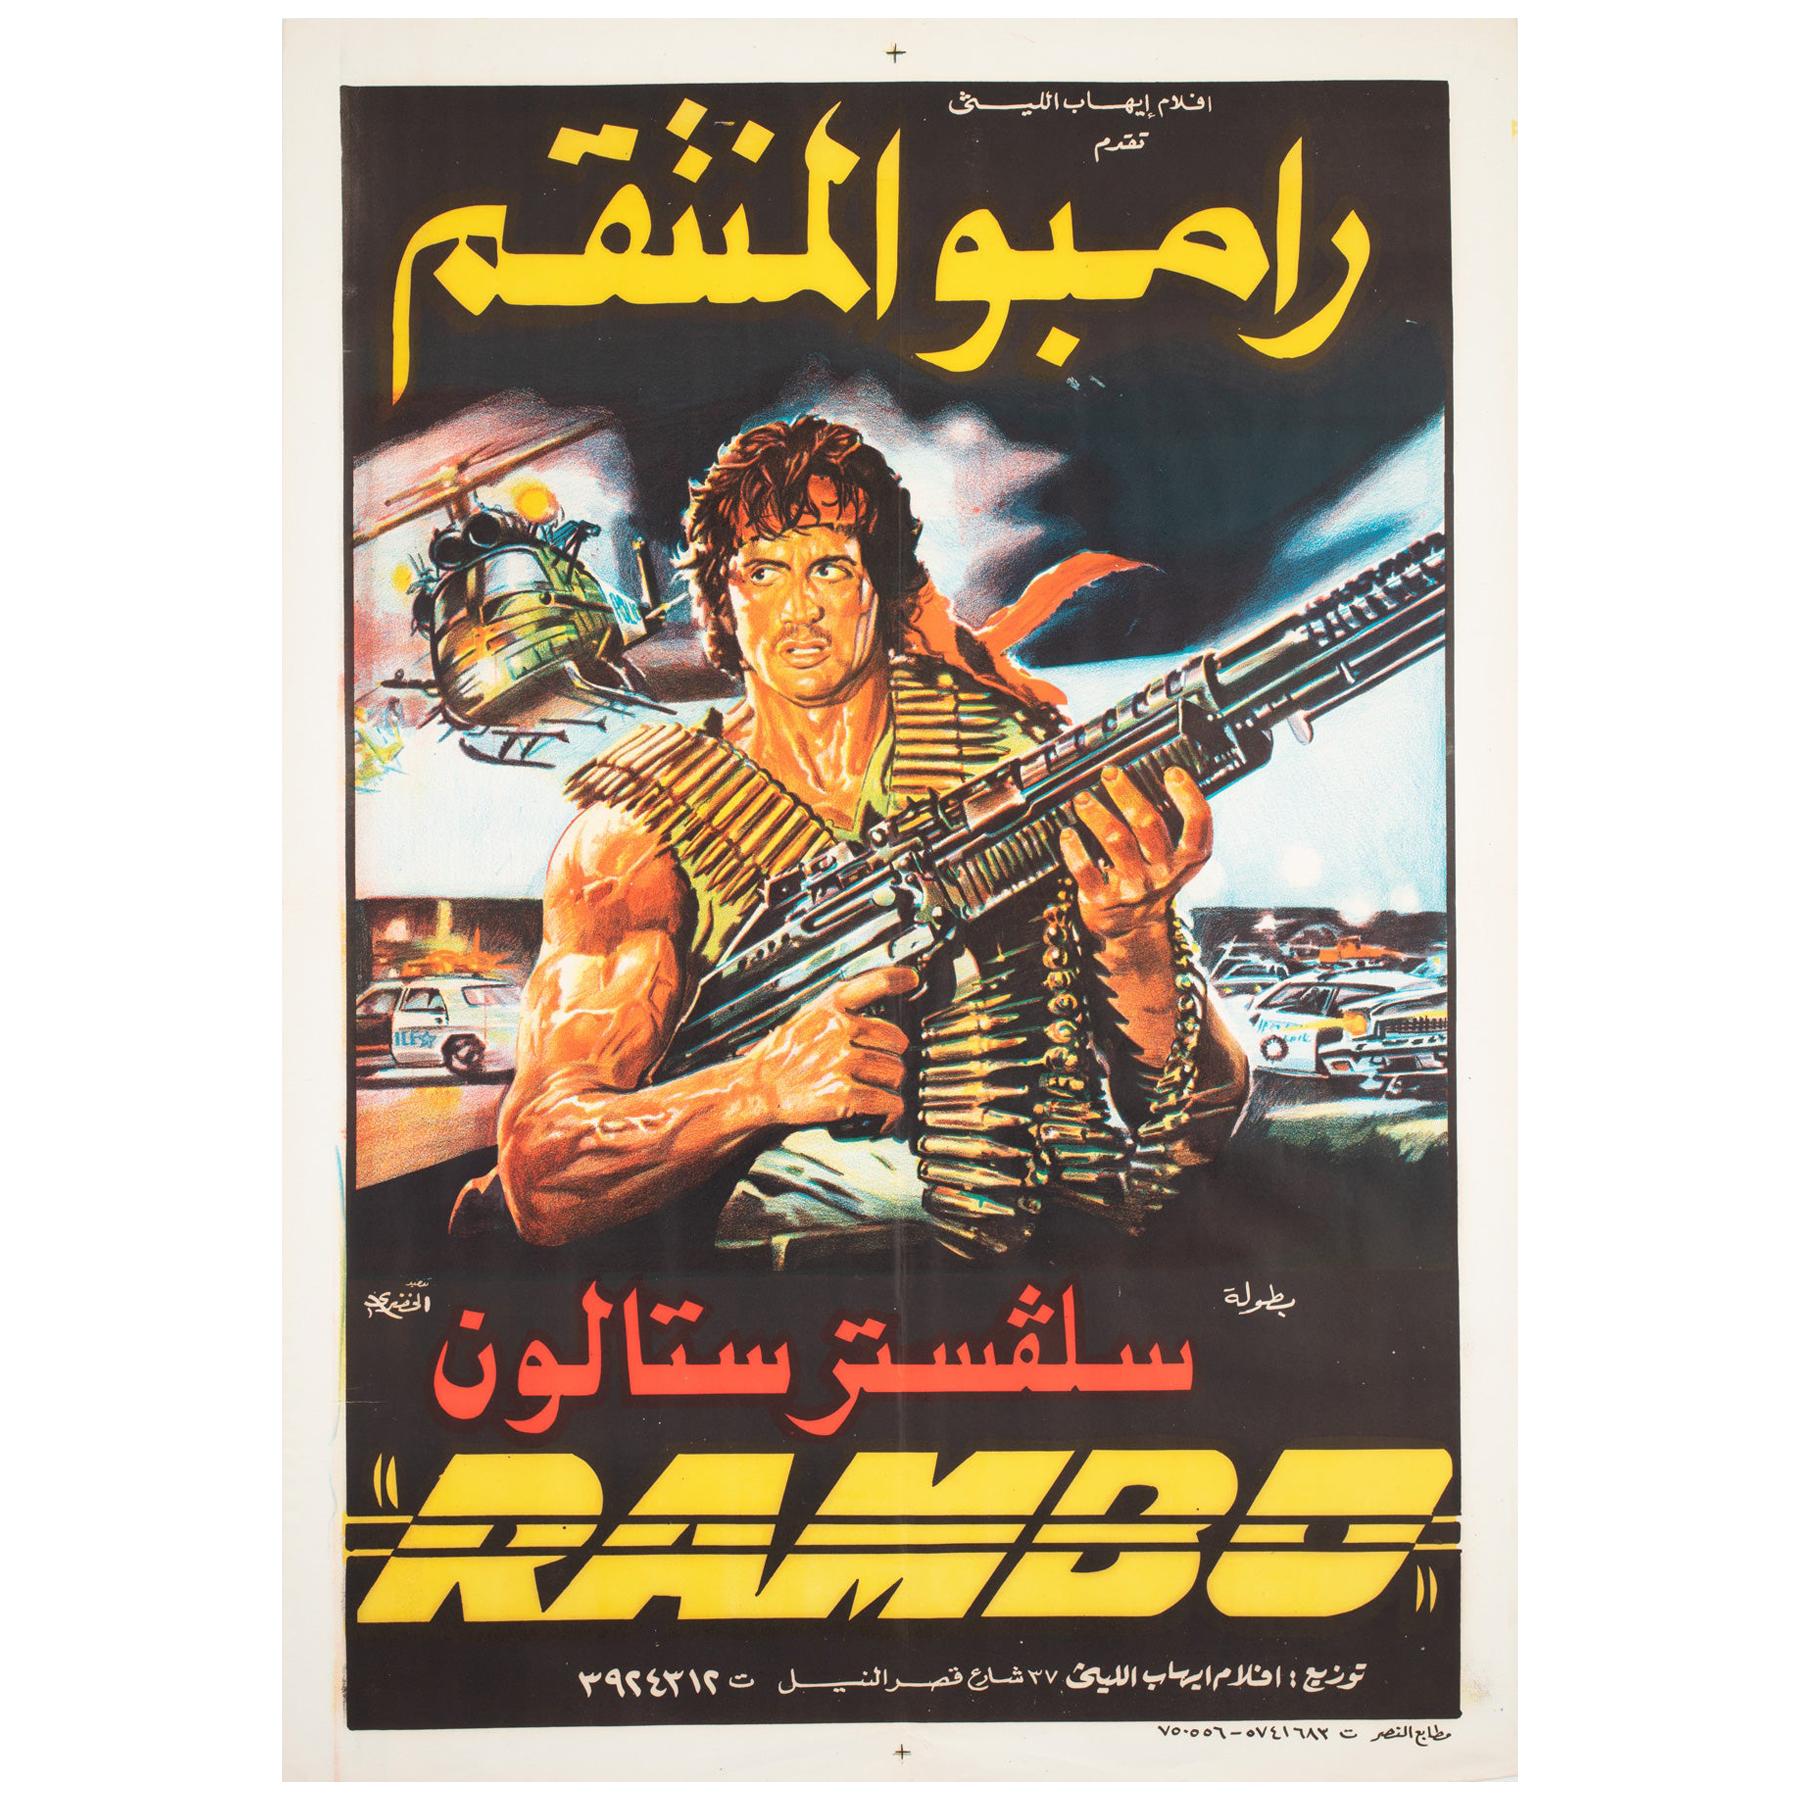 Rambo 1982. Rambo first Blood плакат.